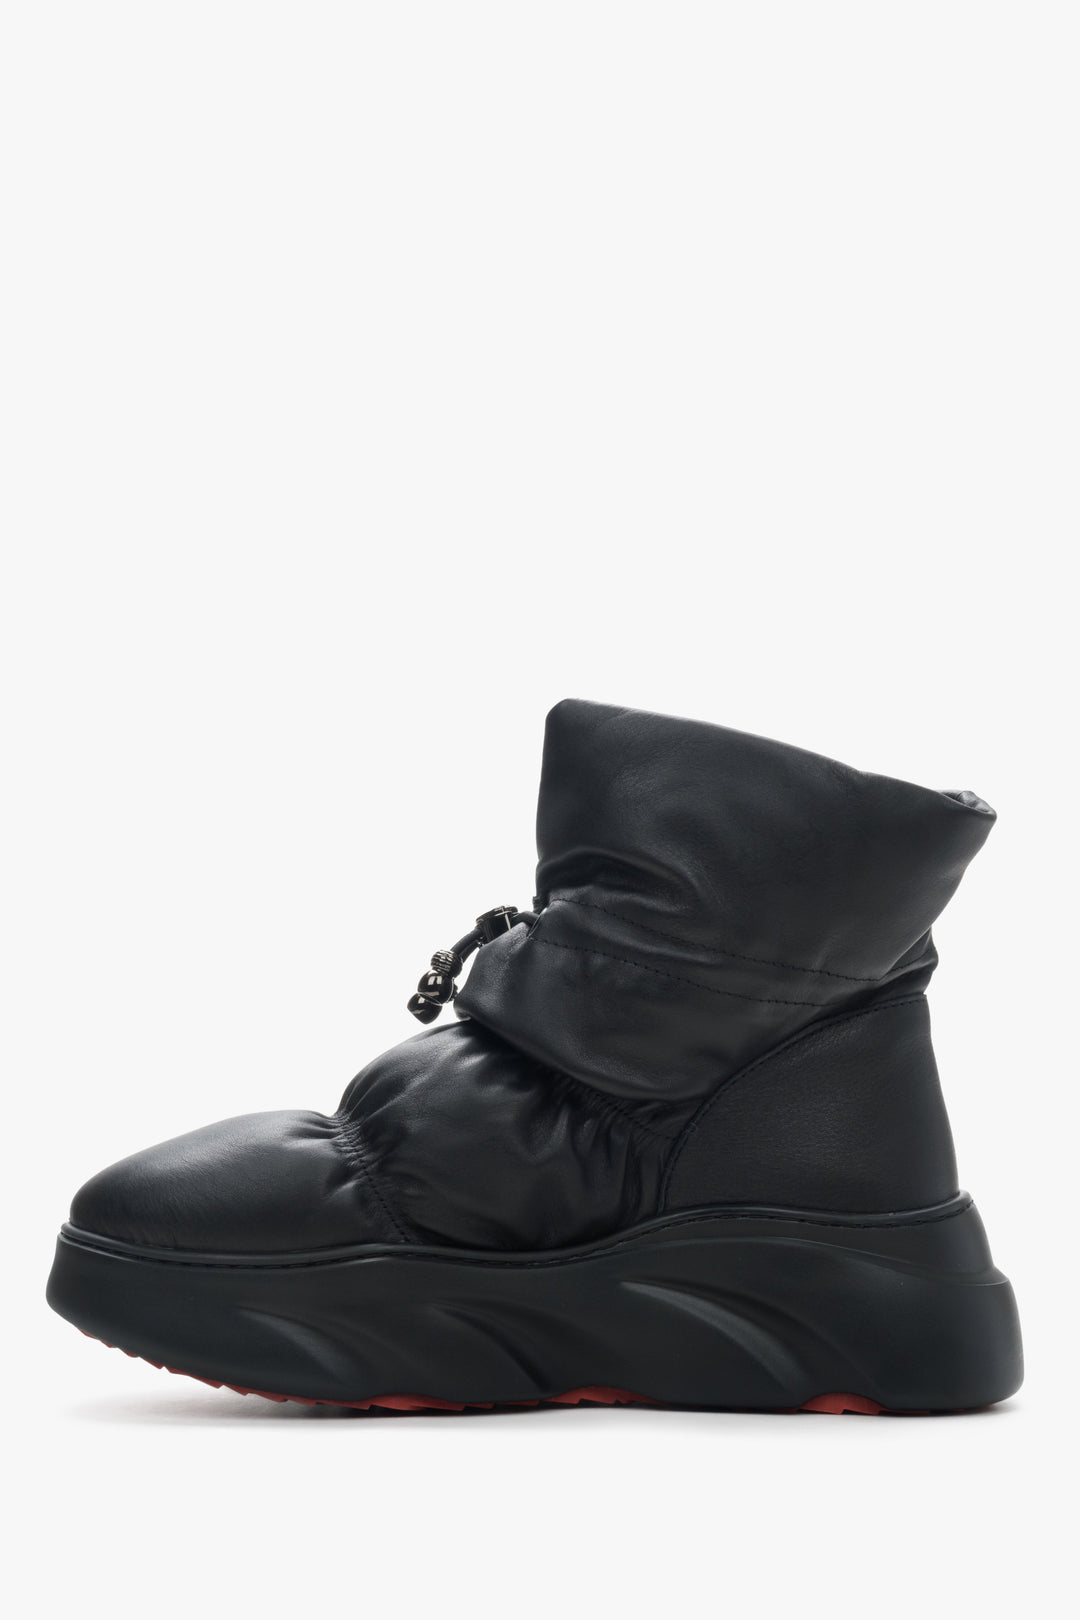 Women's black Estro leather snow boots - shoe profile.